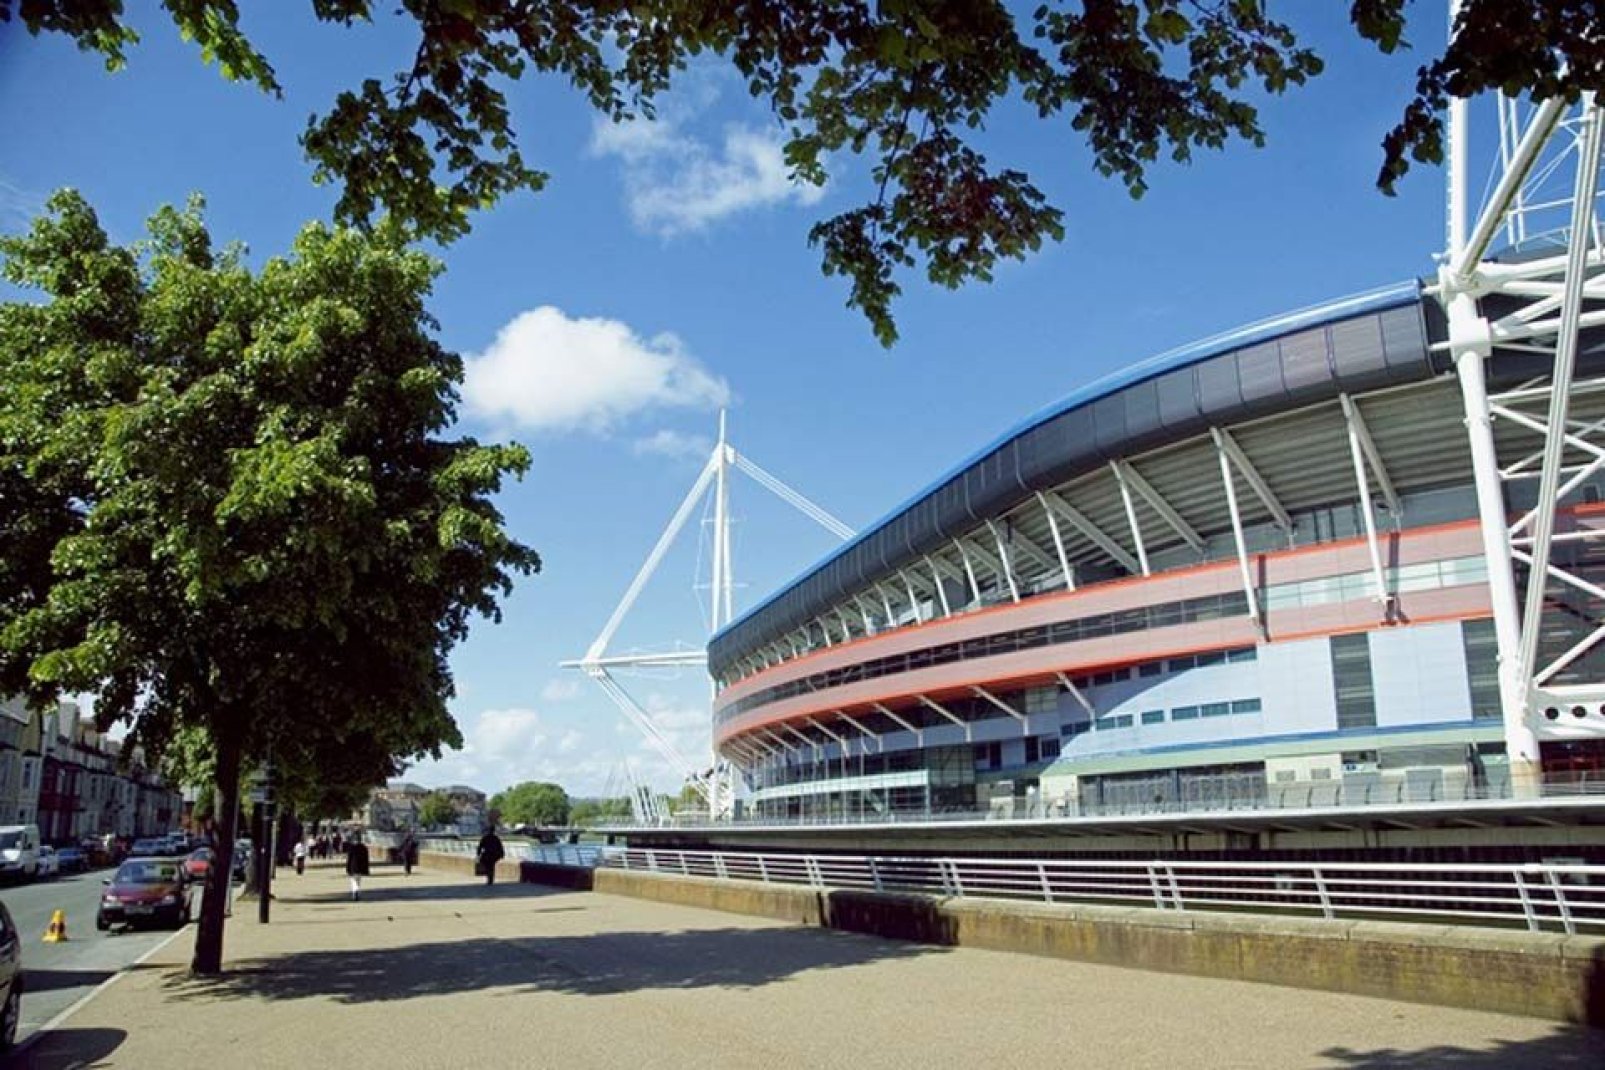 Es handelt sich um eines der größten Stadien des Vereinigten Königreichs mit Platz für bis zu 74.500 Zuschauer, in dem Fußball- und Rugbymatchs, Motorsportevents, Konzerte usw. abgehalten werden. 